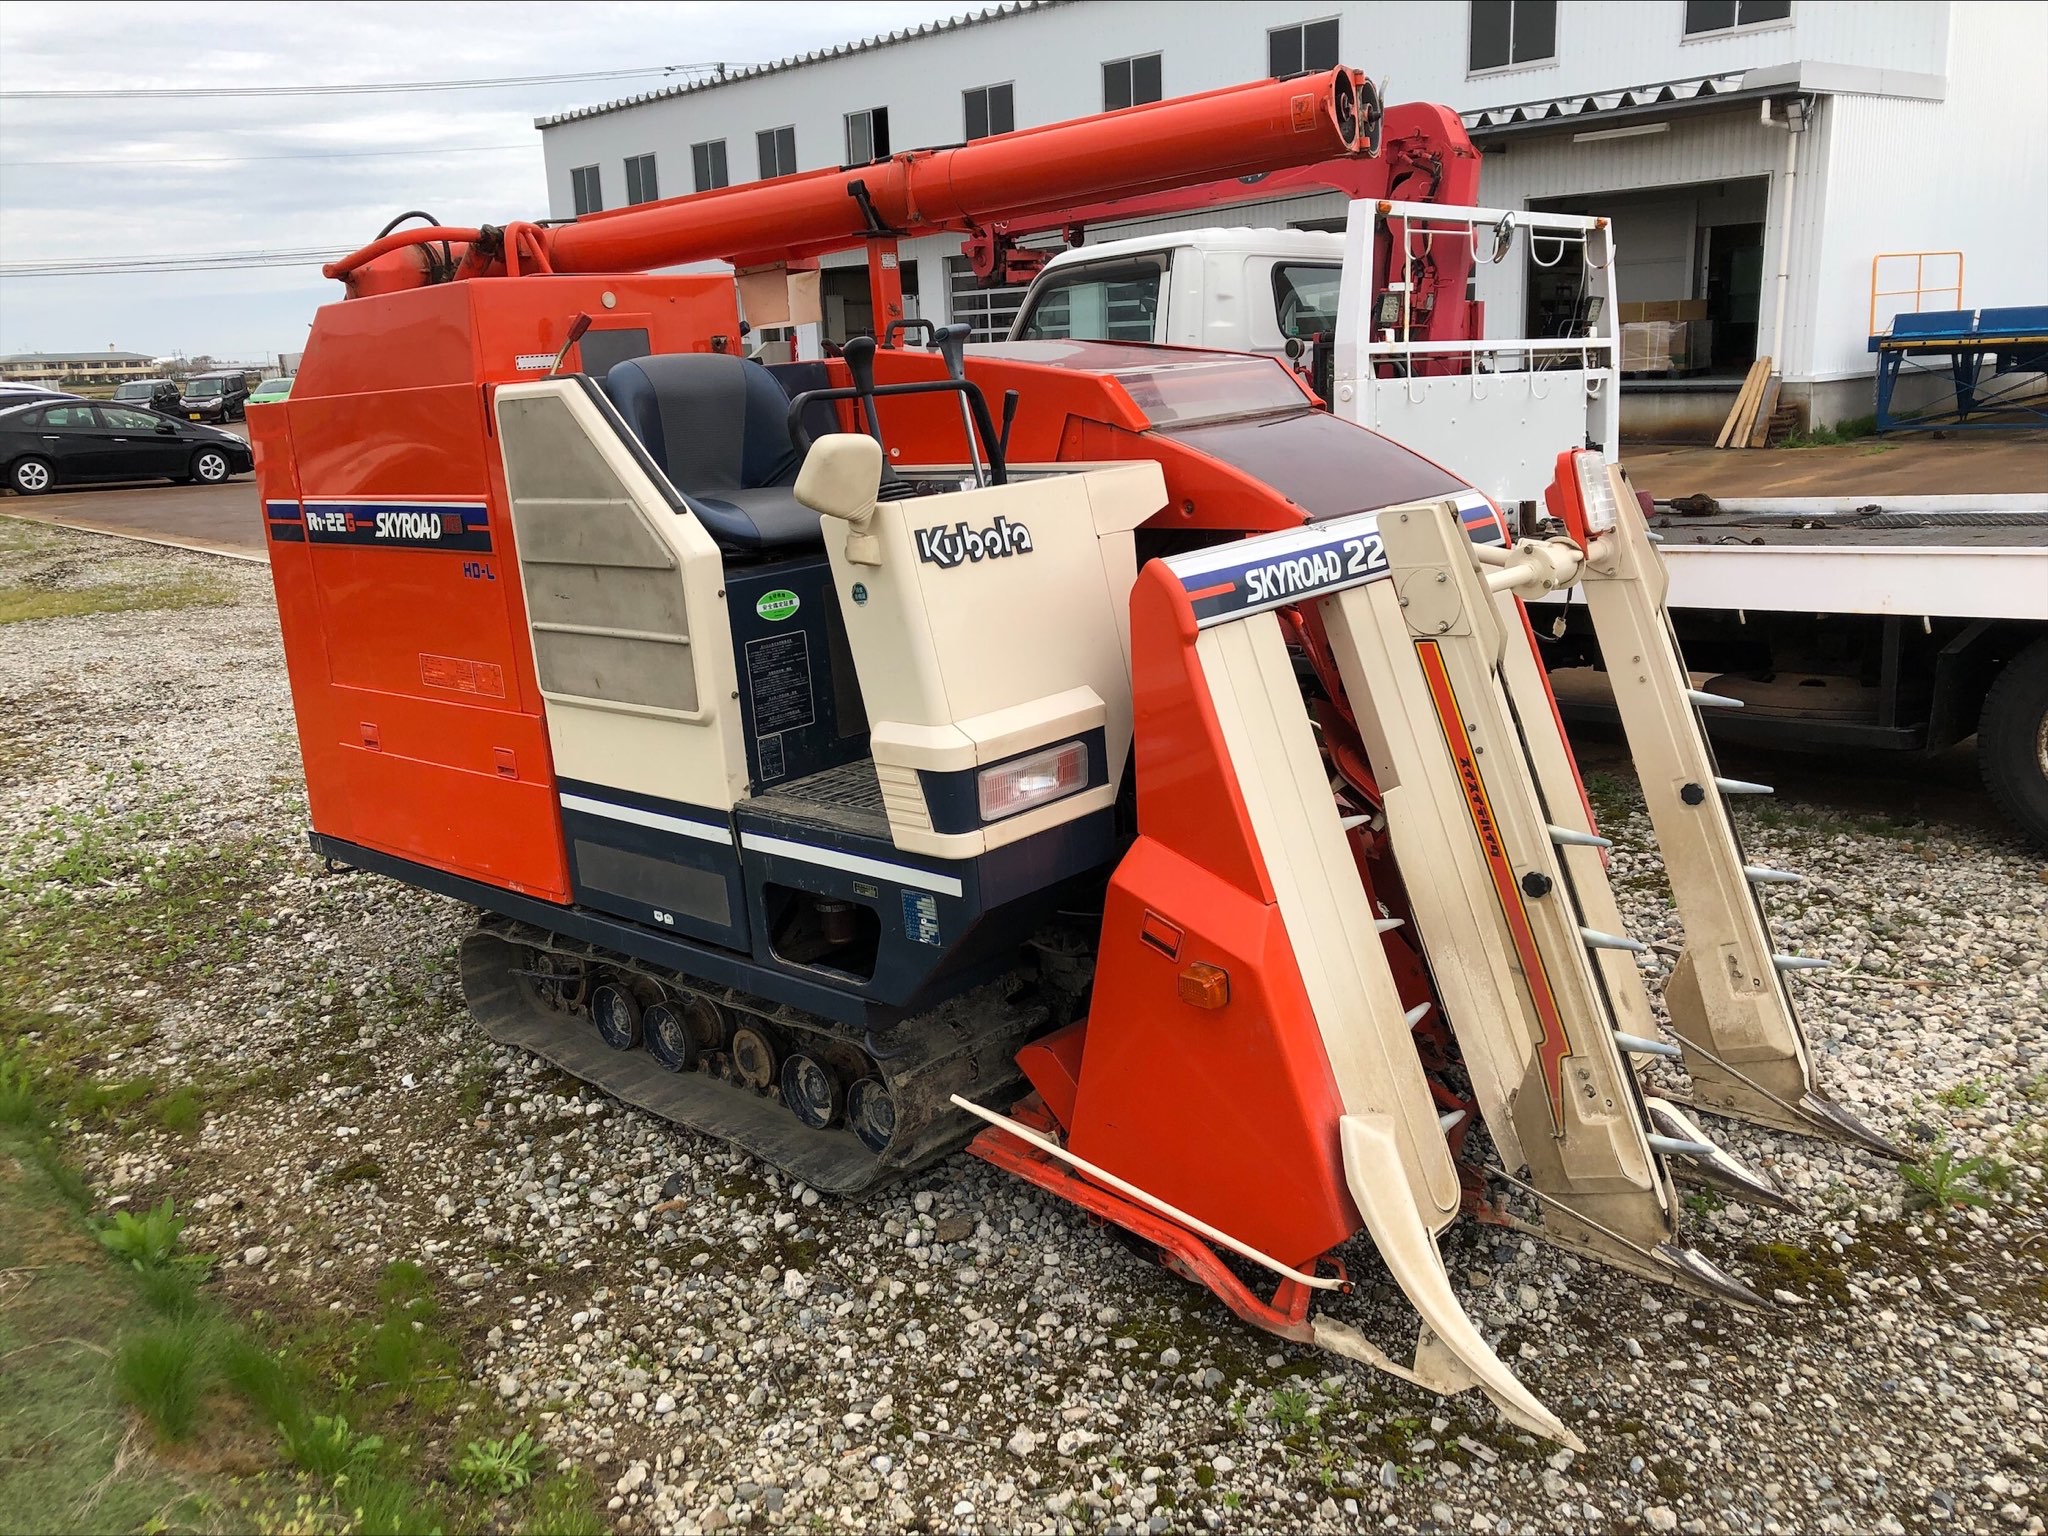 Kubota R1-22 Harvester rows – JAT Used Market